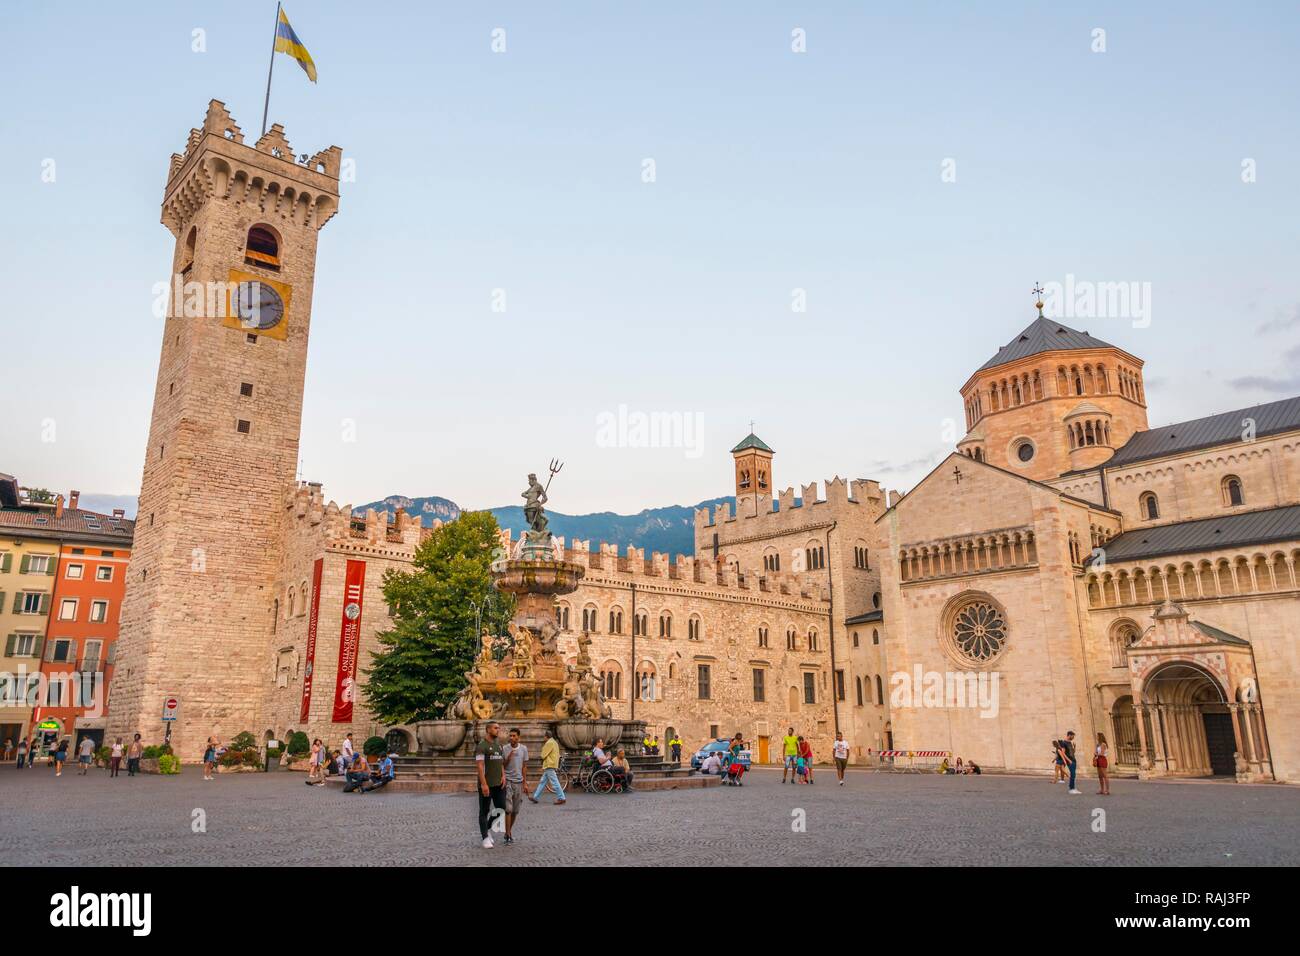 La Plaza de la catedral, la Piazza del Duomo, con la fuente de Neptuno, la Fontana del Nettuno, la Torre del Reloj del Palazzo Pretorio Foto de stock